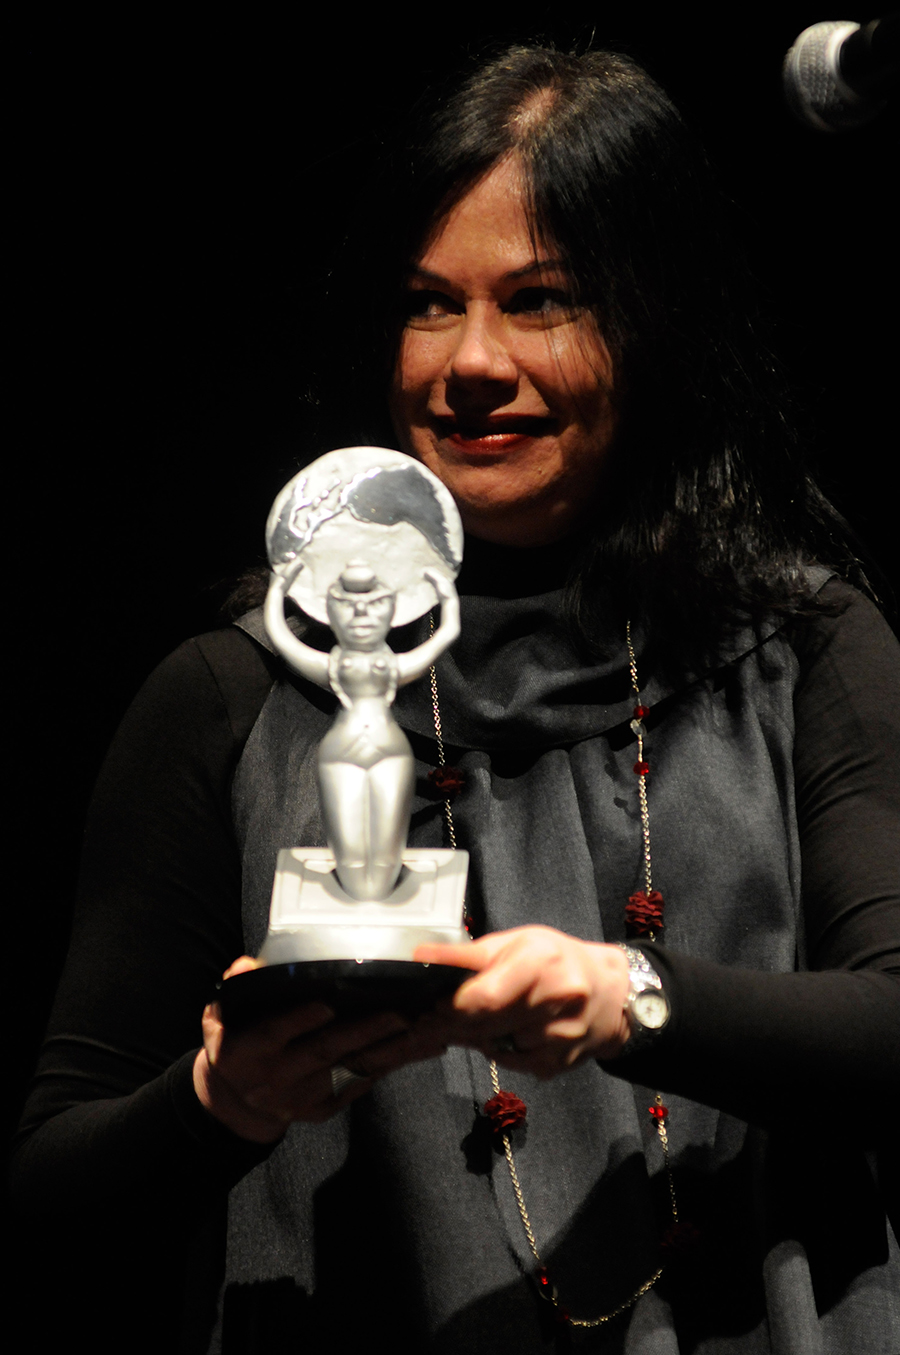 Sidênia Freire, directora de programación de SESC TV (Brasil), recibiendo el premio otorgado a 'Caminhos' en la categoría Producción de Serie. // Foto: Pablo Nogueira.